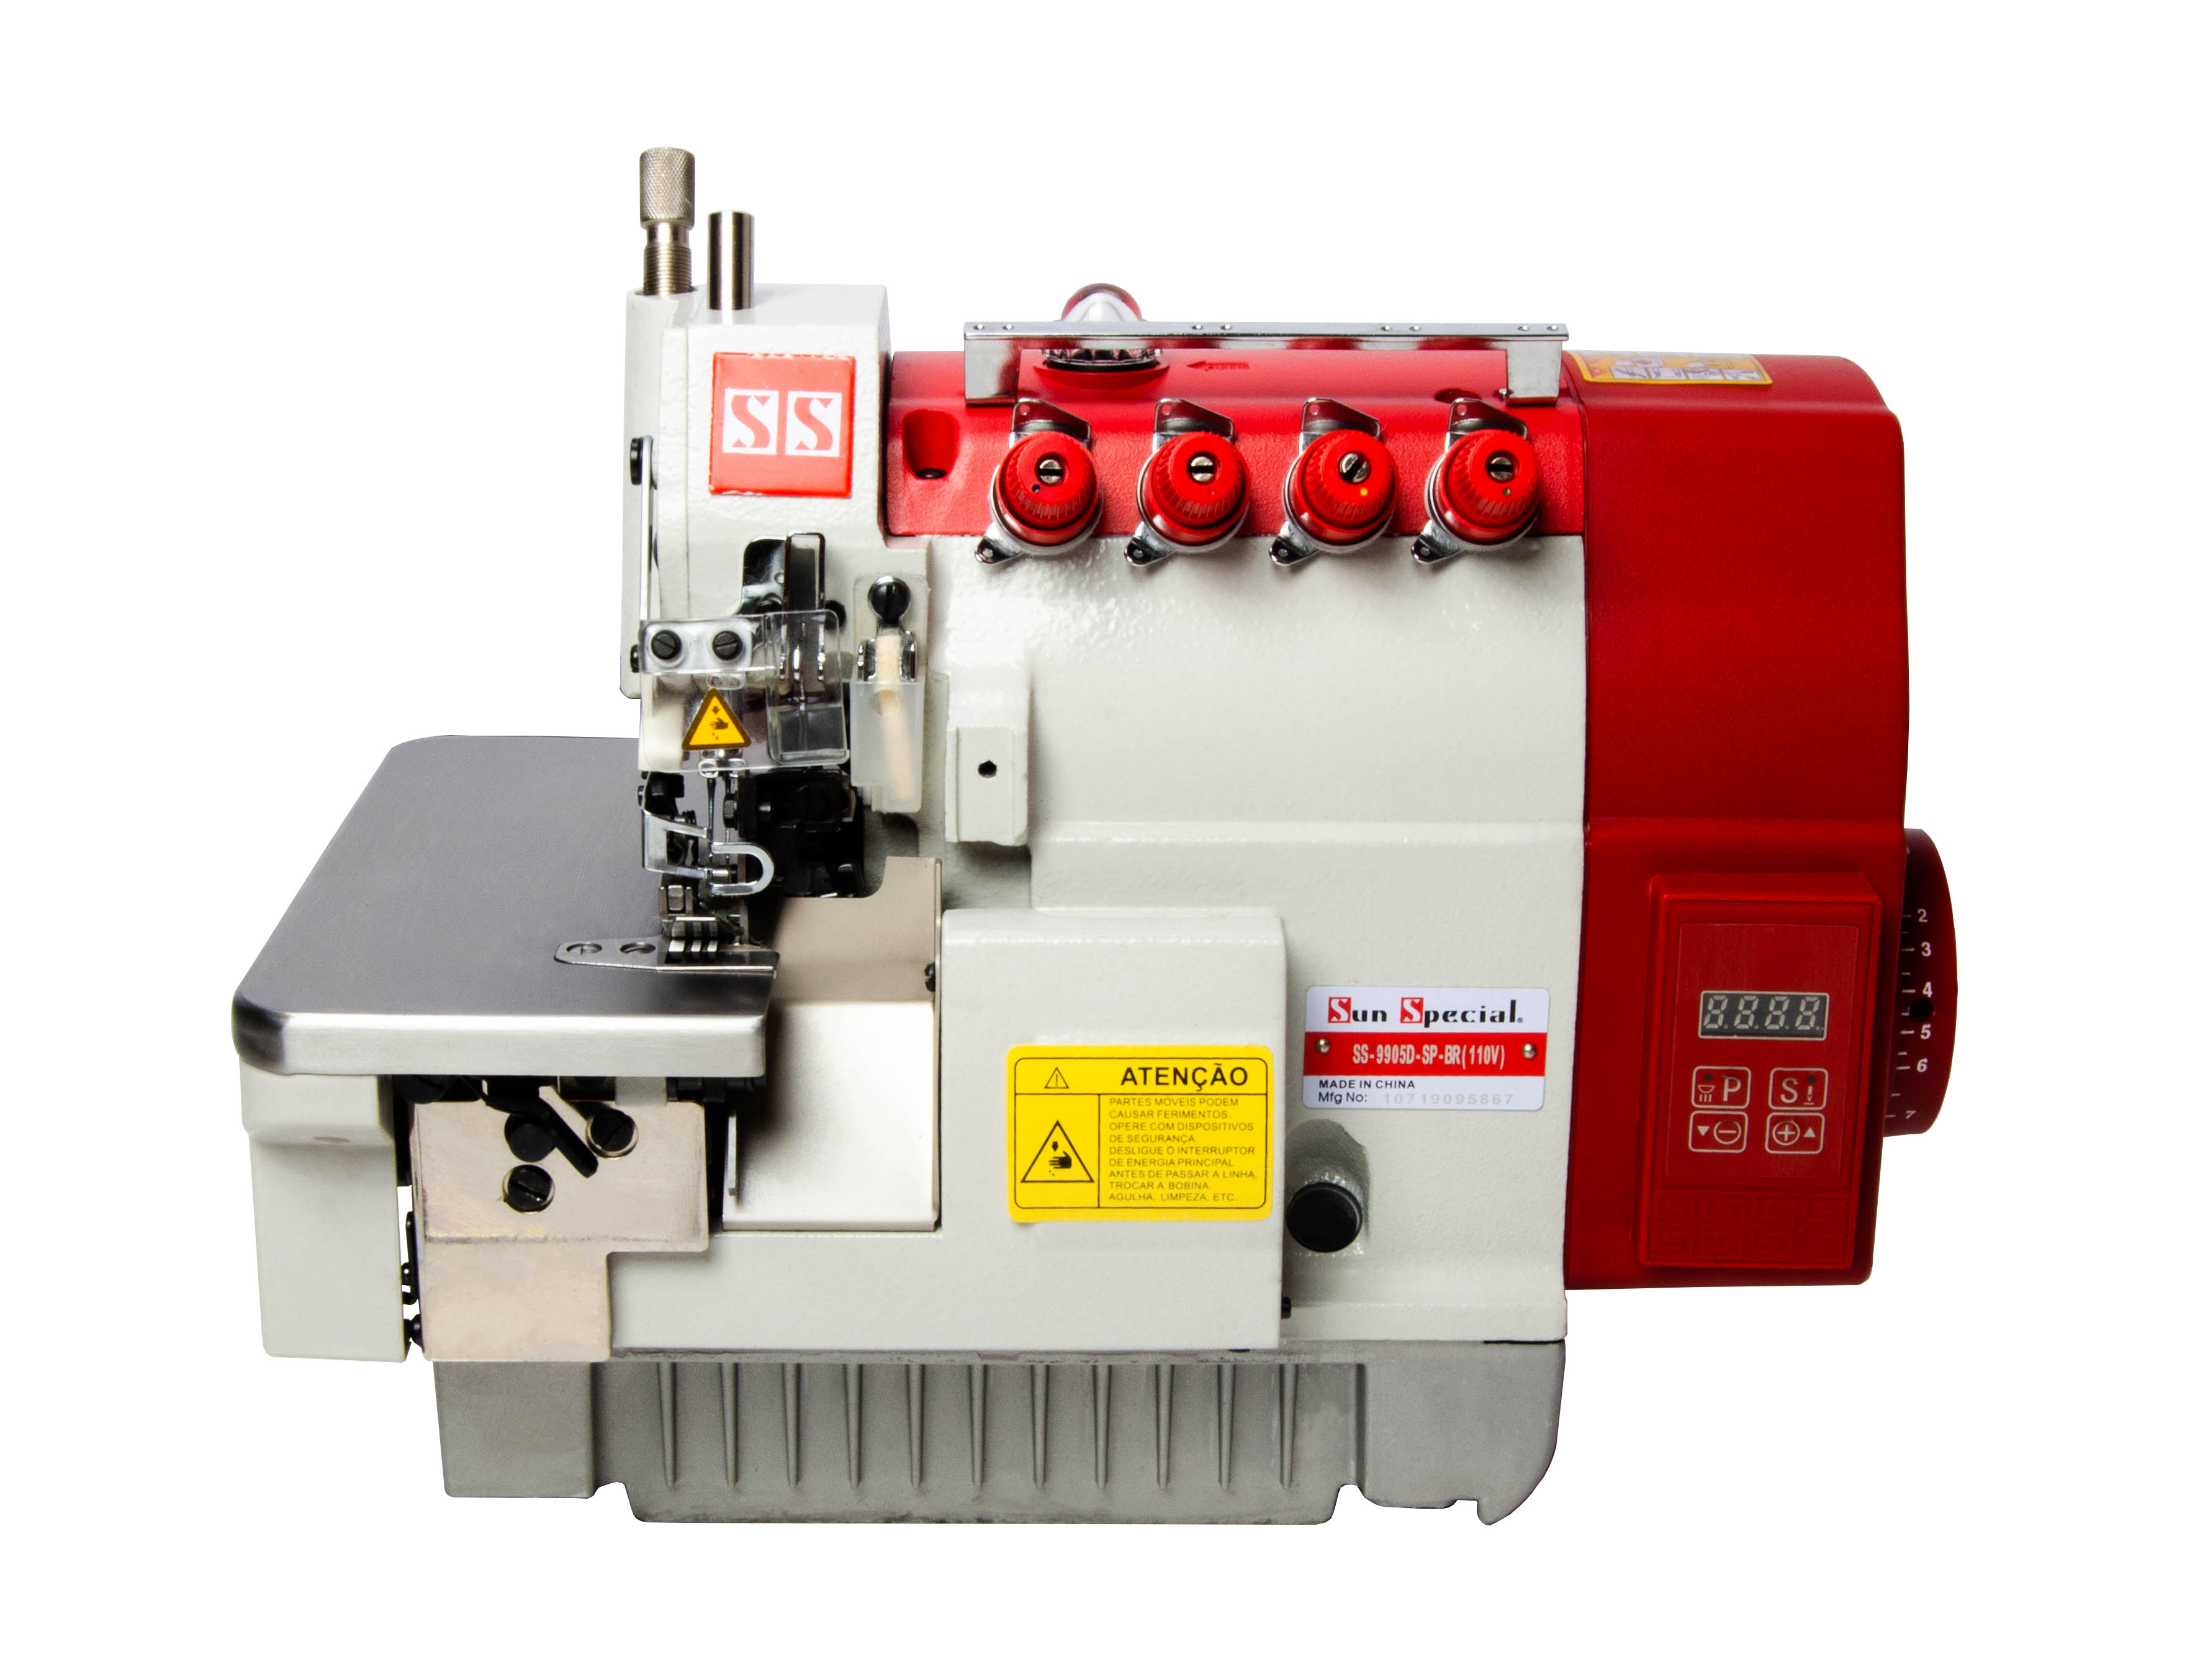 Máquina Costura Interlock Industrial com Control Box Acoplado 110v SS9905D-SP-BR - Sun Special